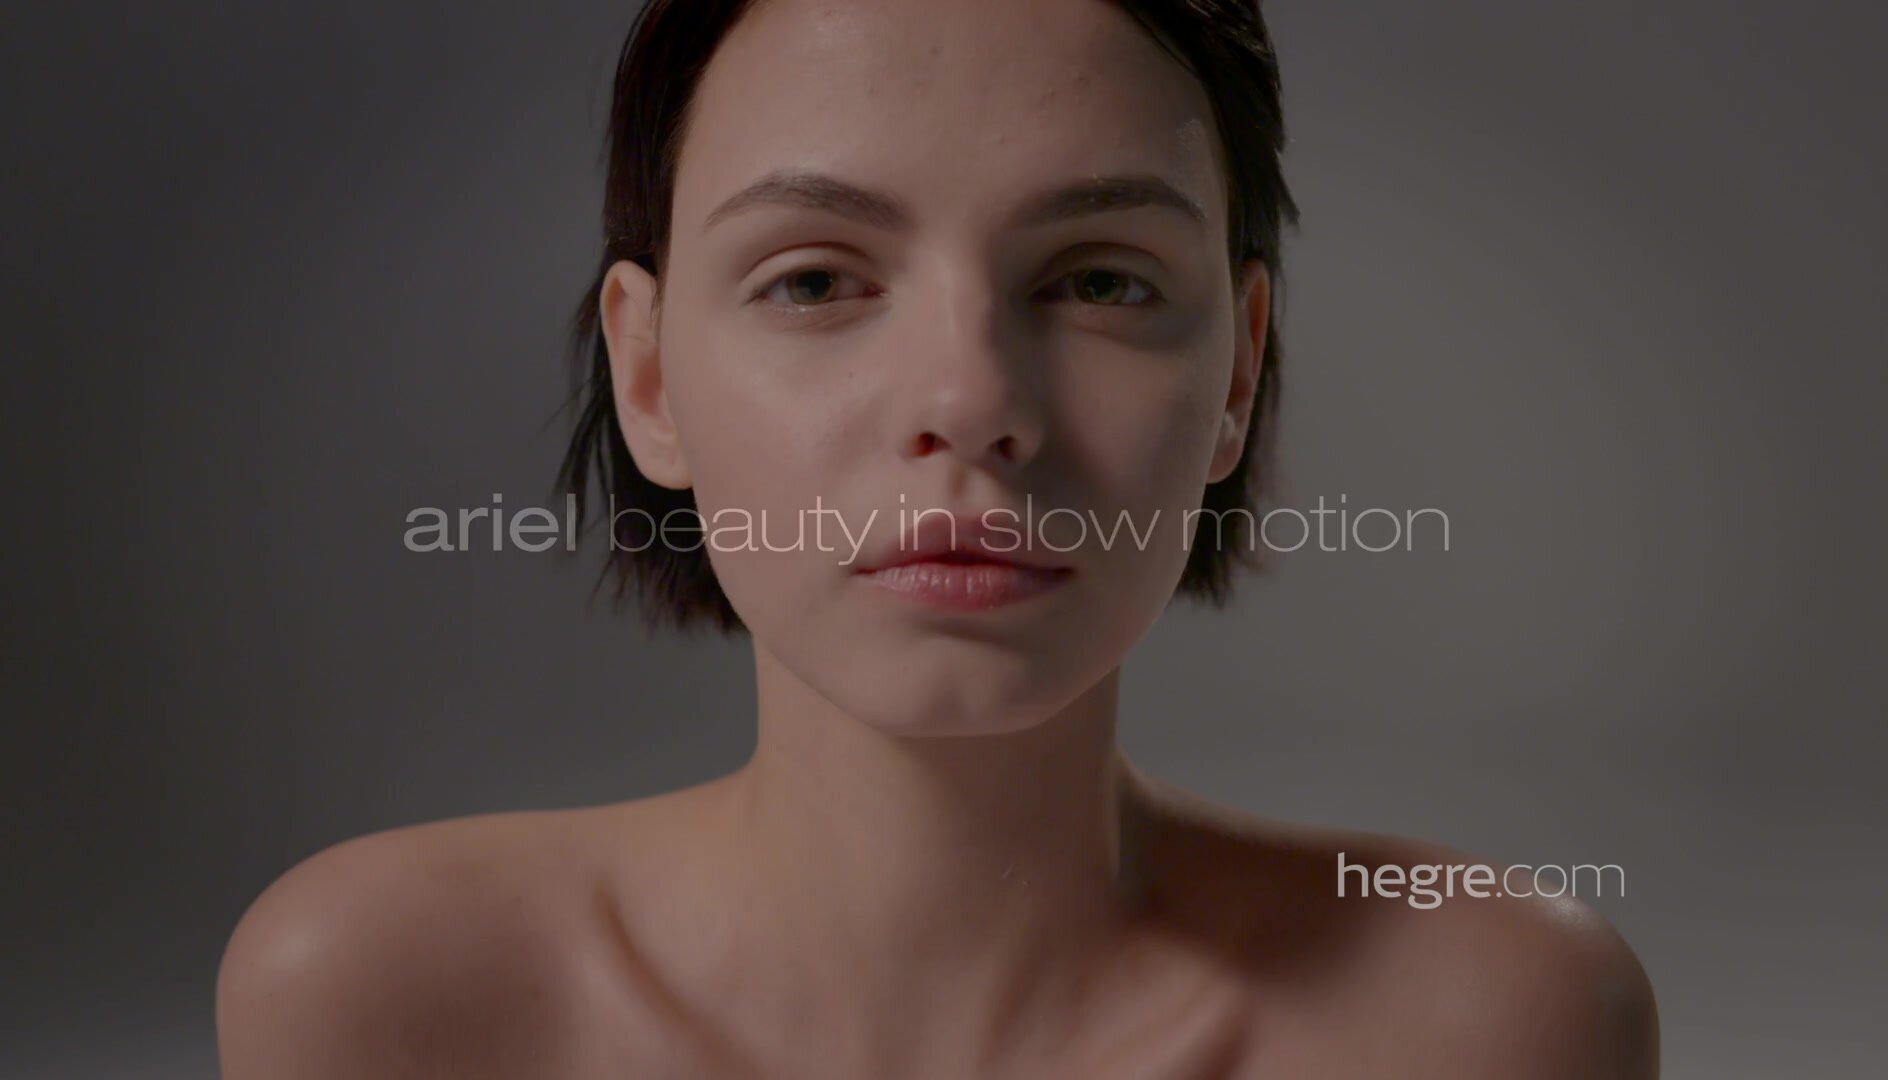 Hegre - Ariel Beauty In Slow Motion